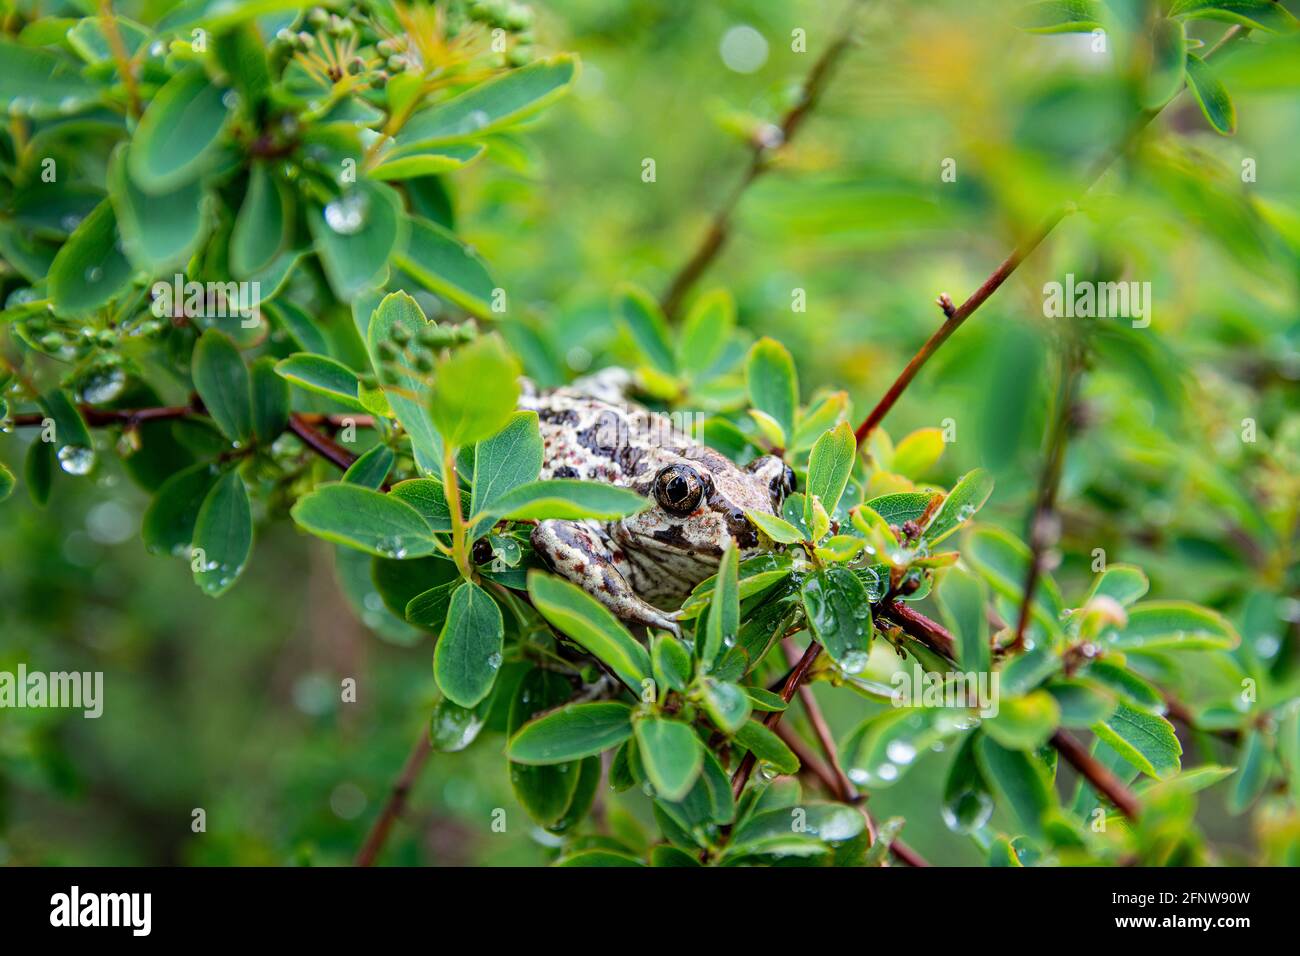 La grenouille brune commune européenne se trouve dans des feuilles vertes sur la branche de l'arbre après la pluie. Rana temporaria gros plan. Banque D'Images